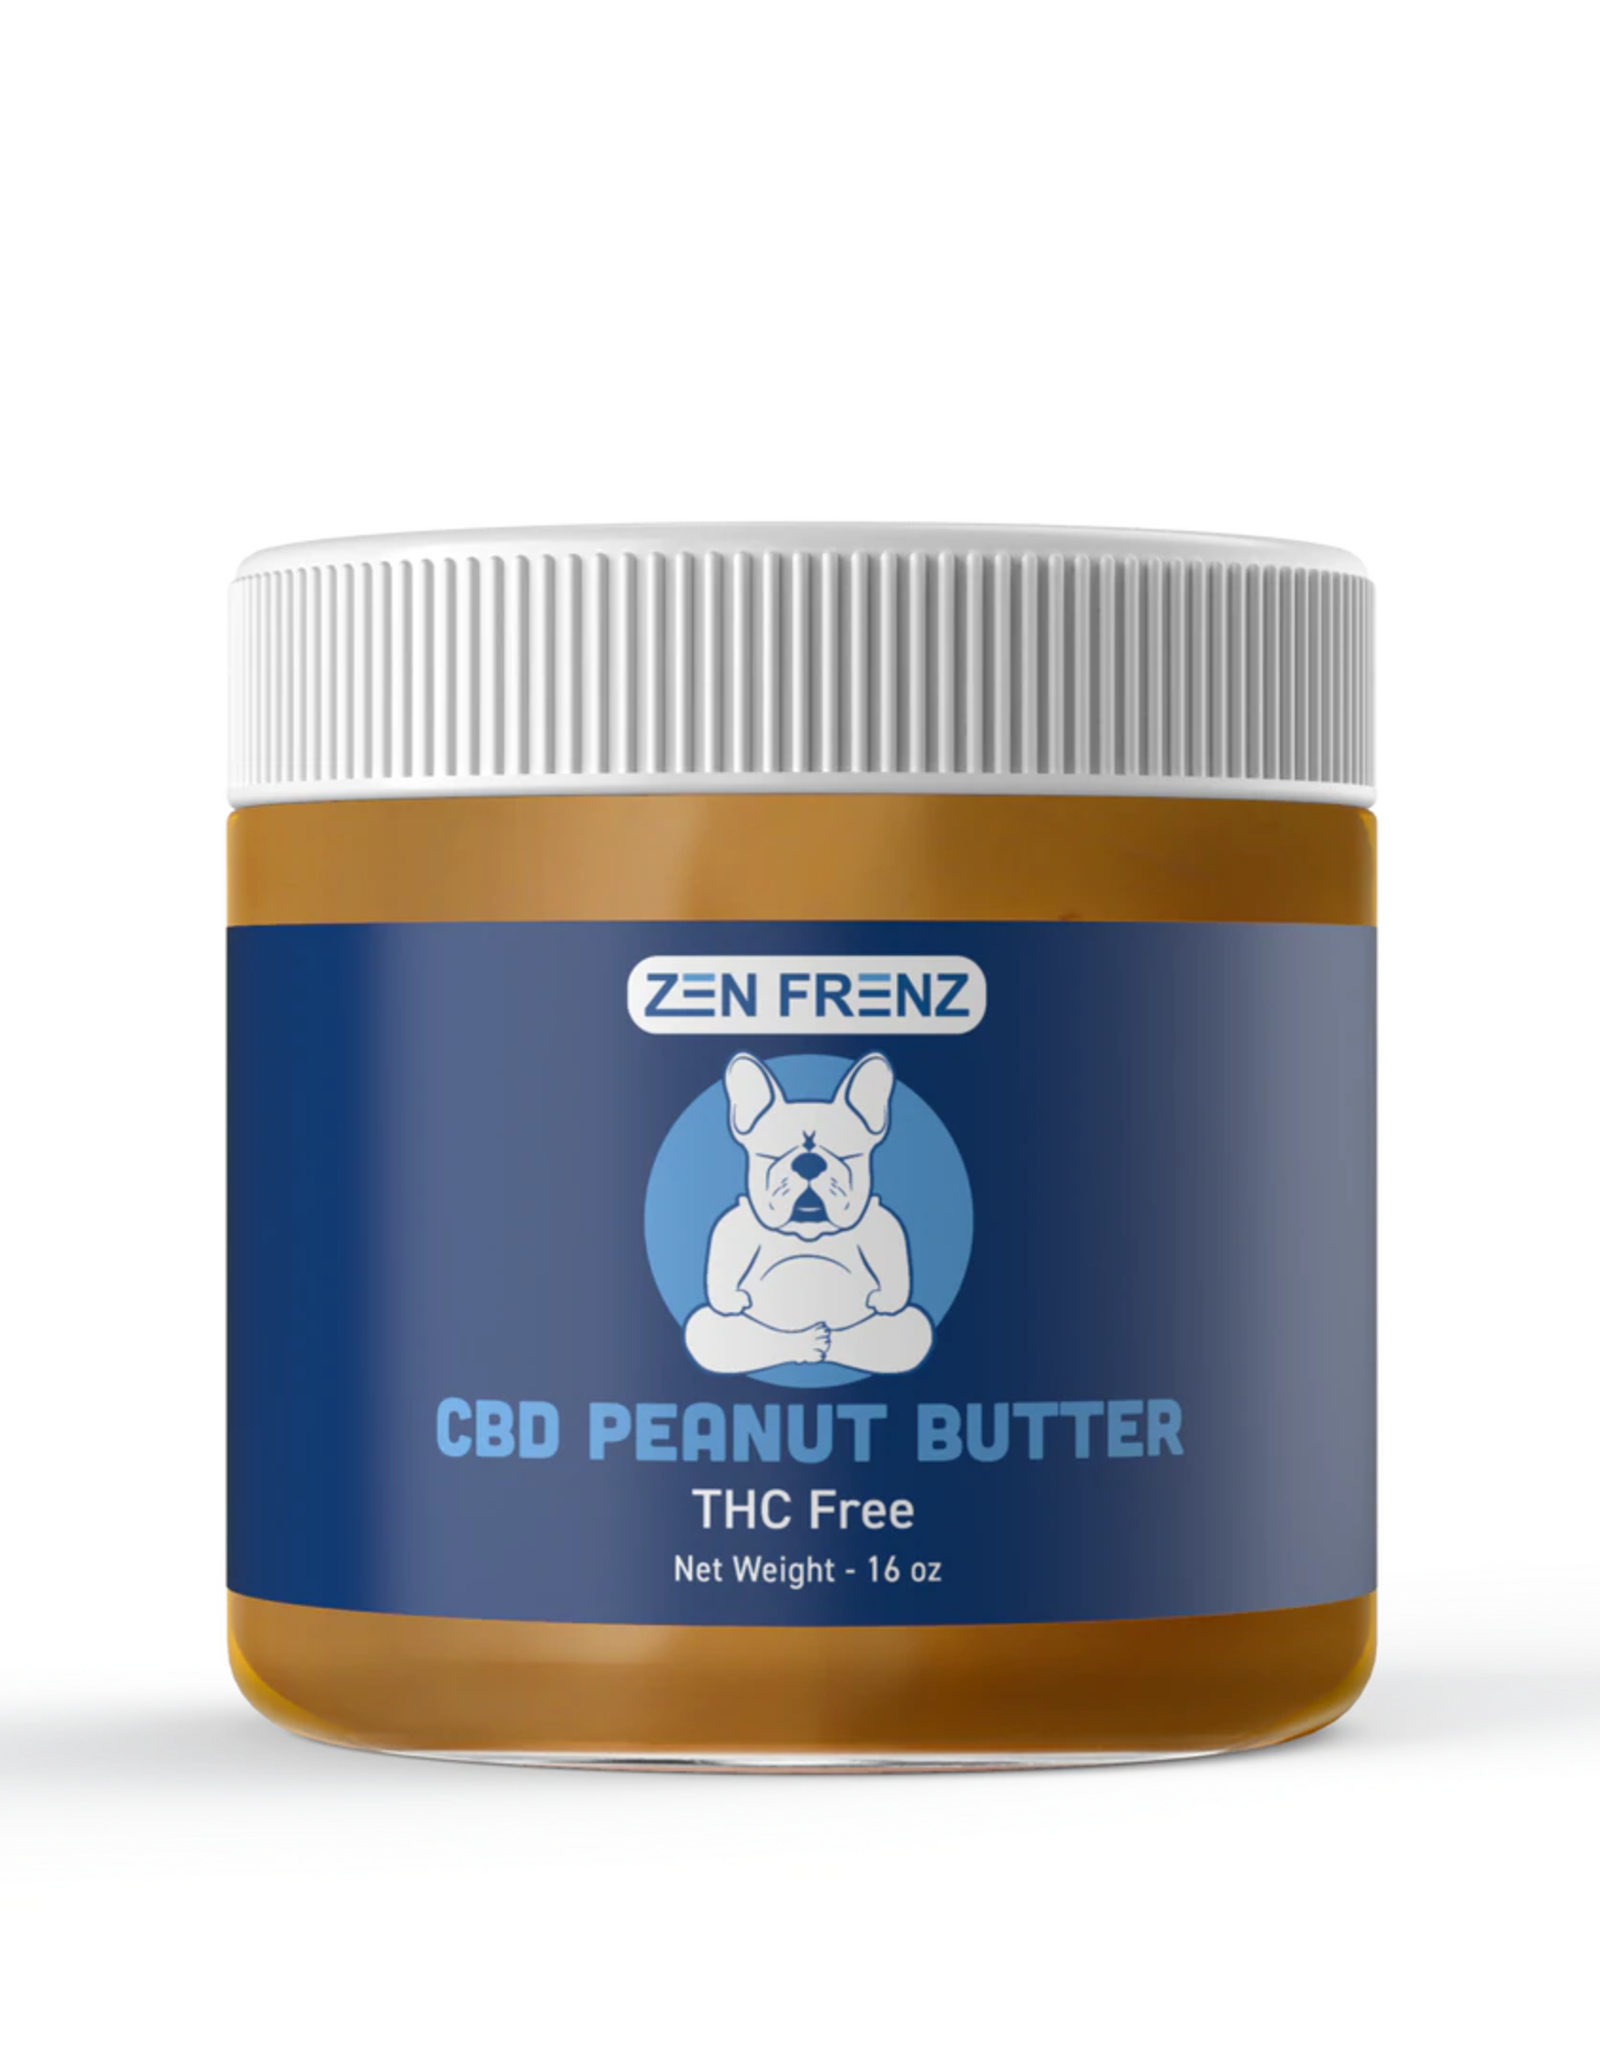 Zen Frenz CBD Peanut Butter